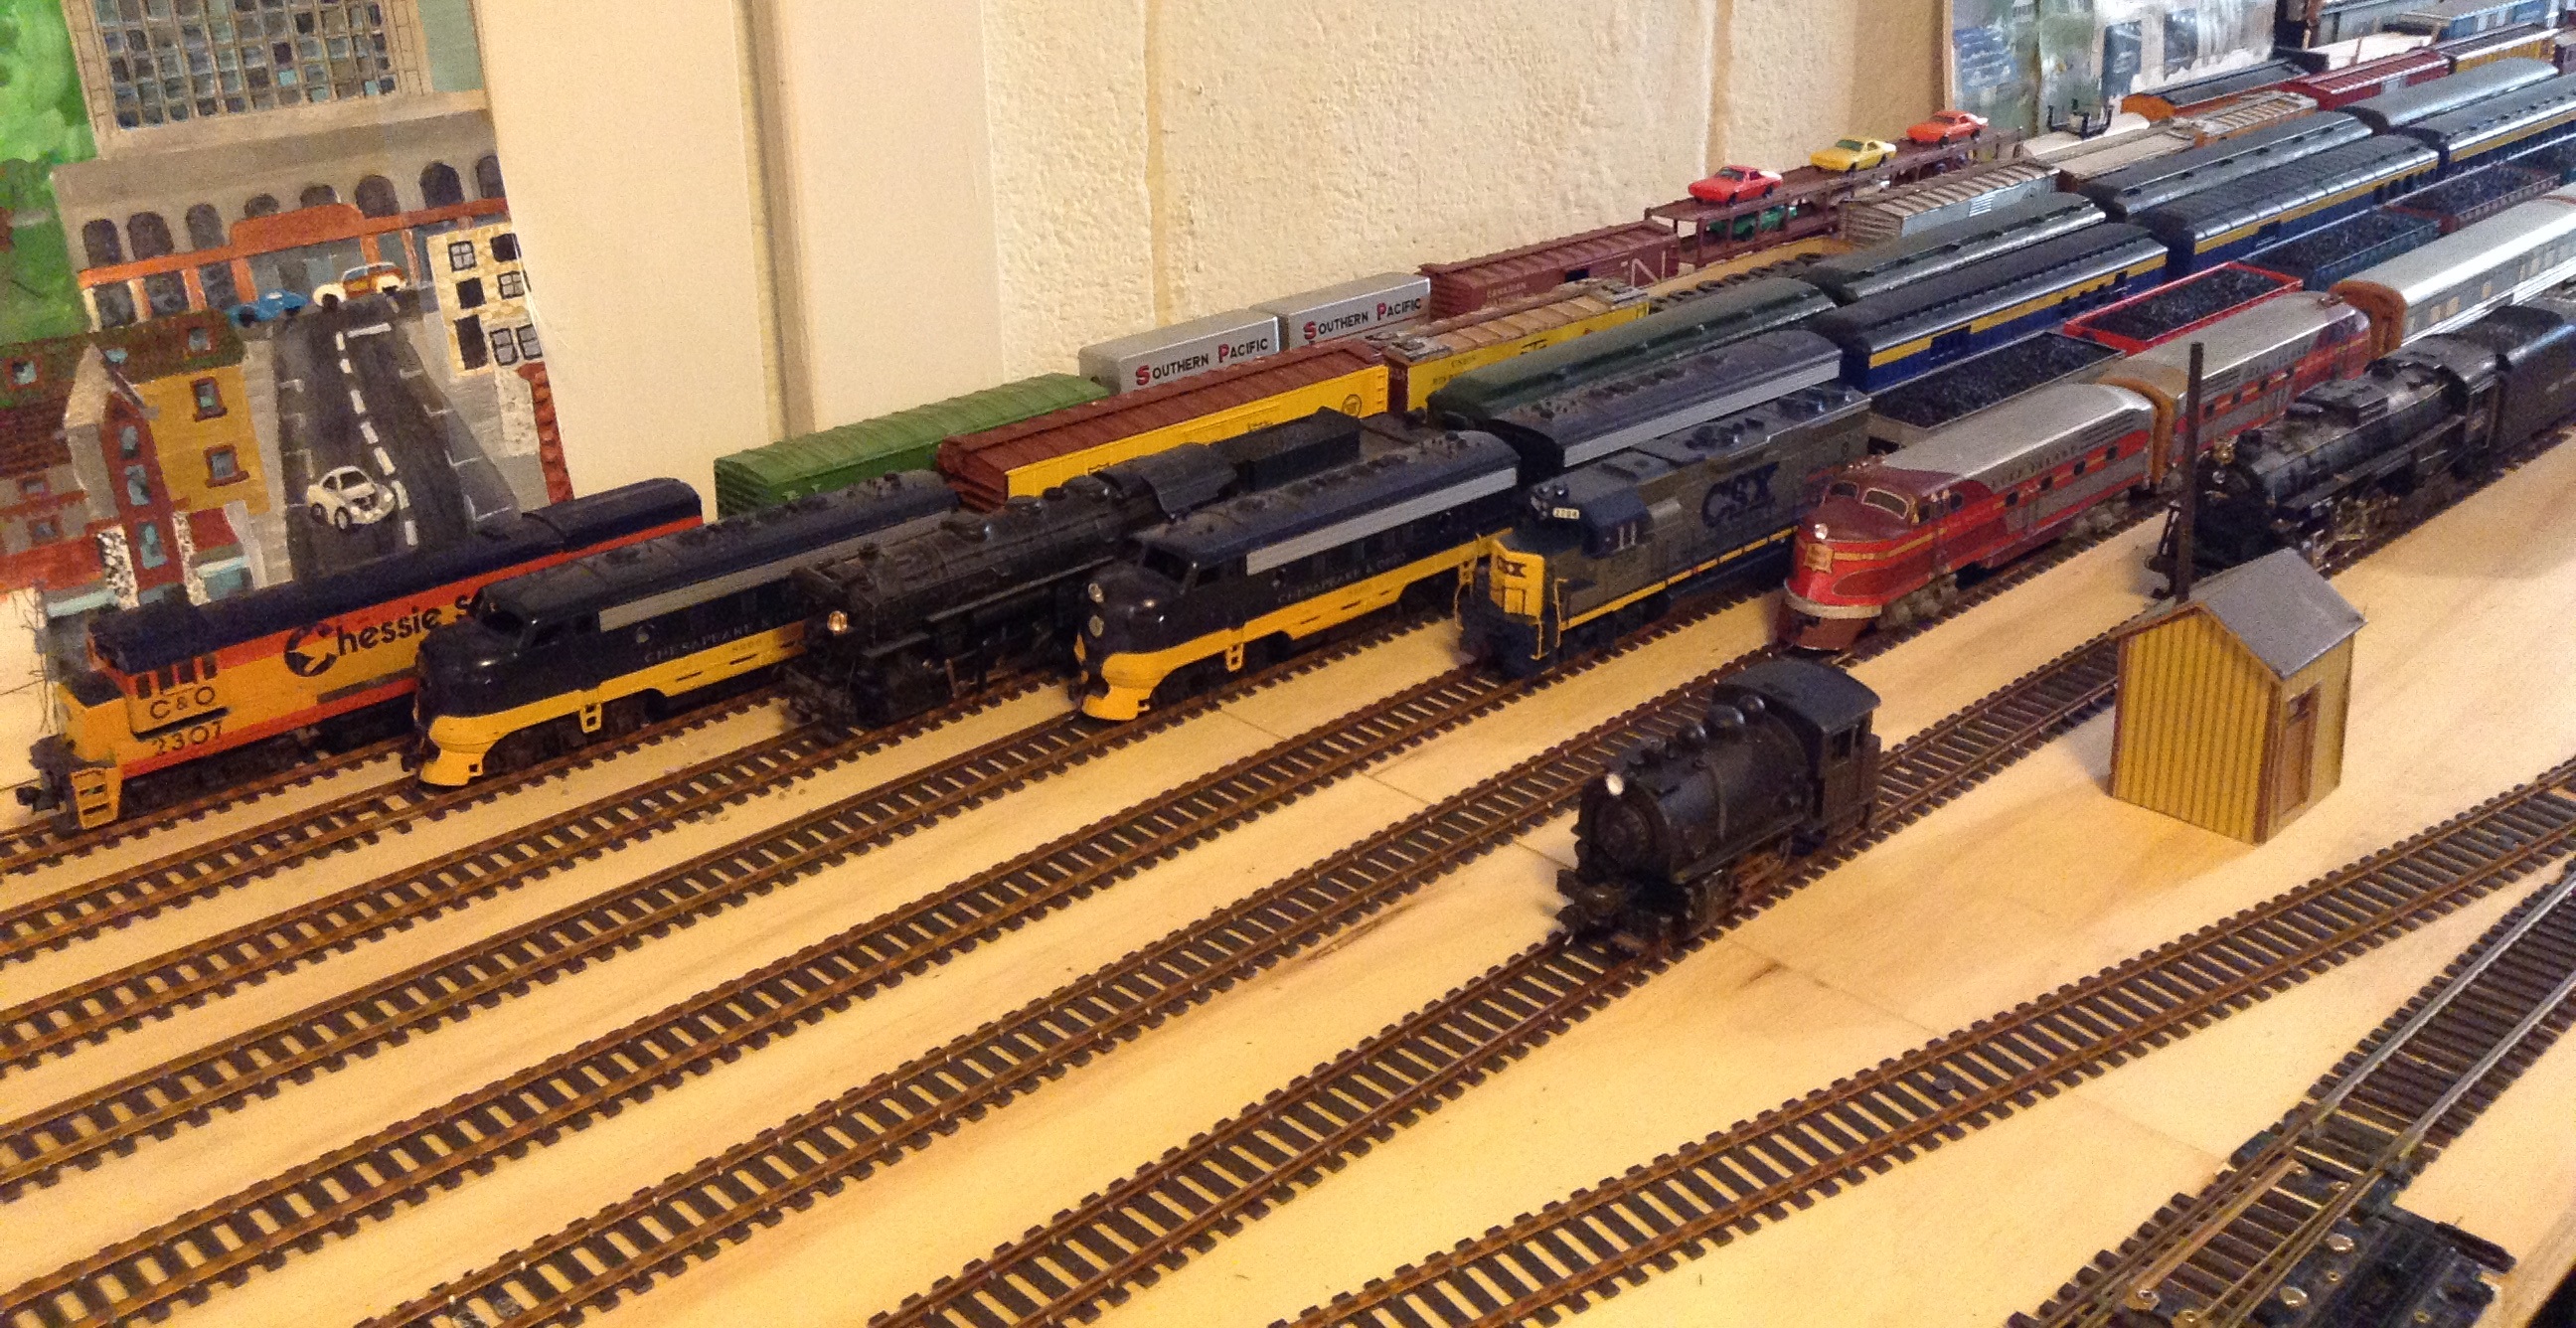 Geoffs N Scale Model Railroad Layout - Great Model Trains